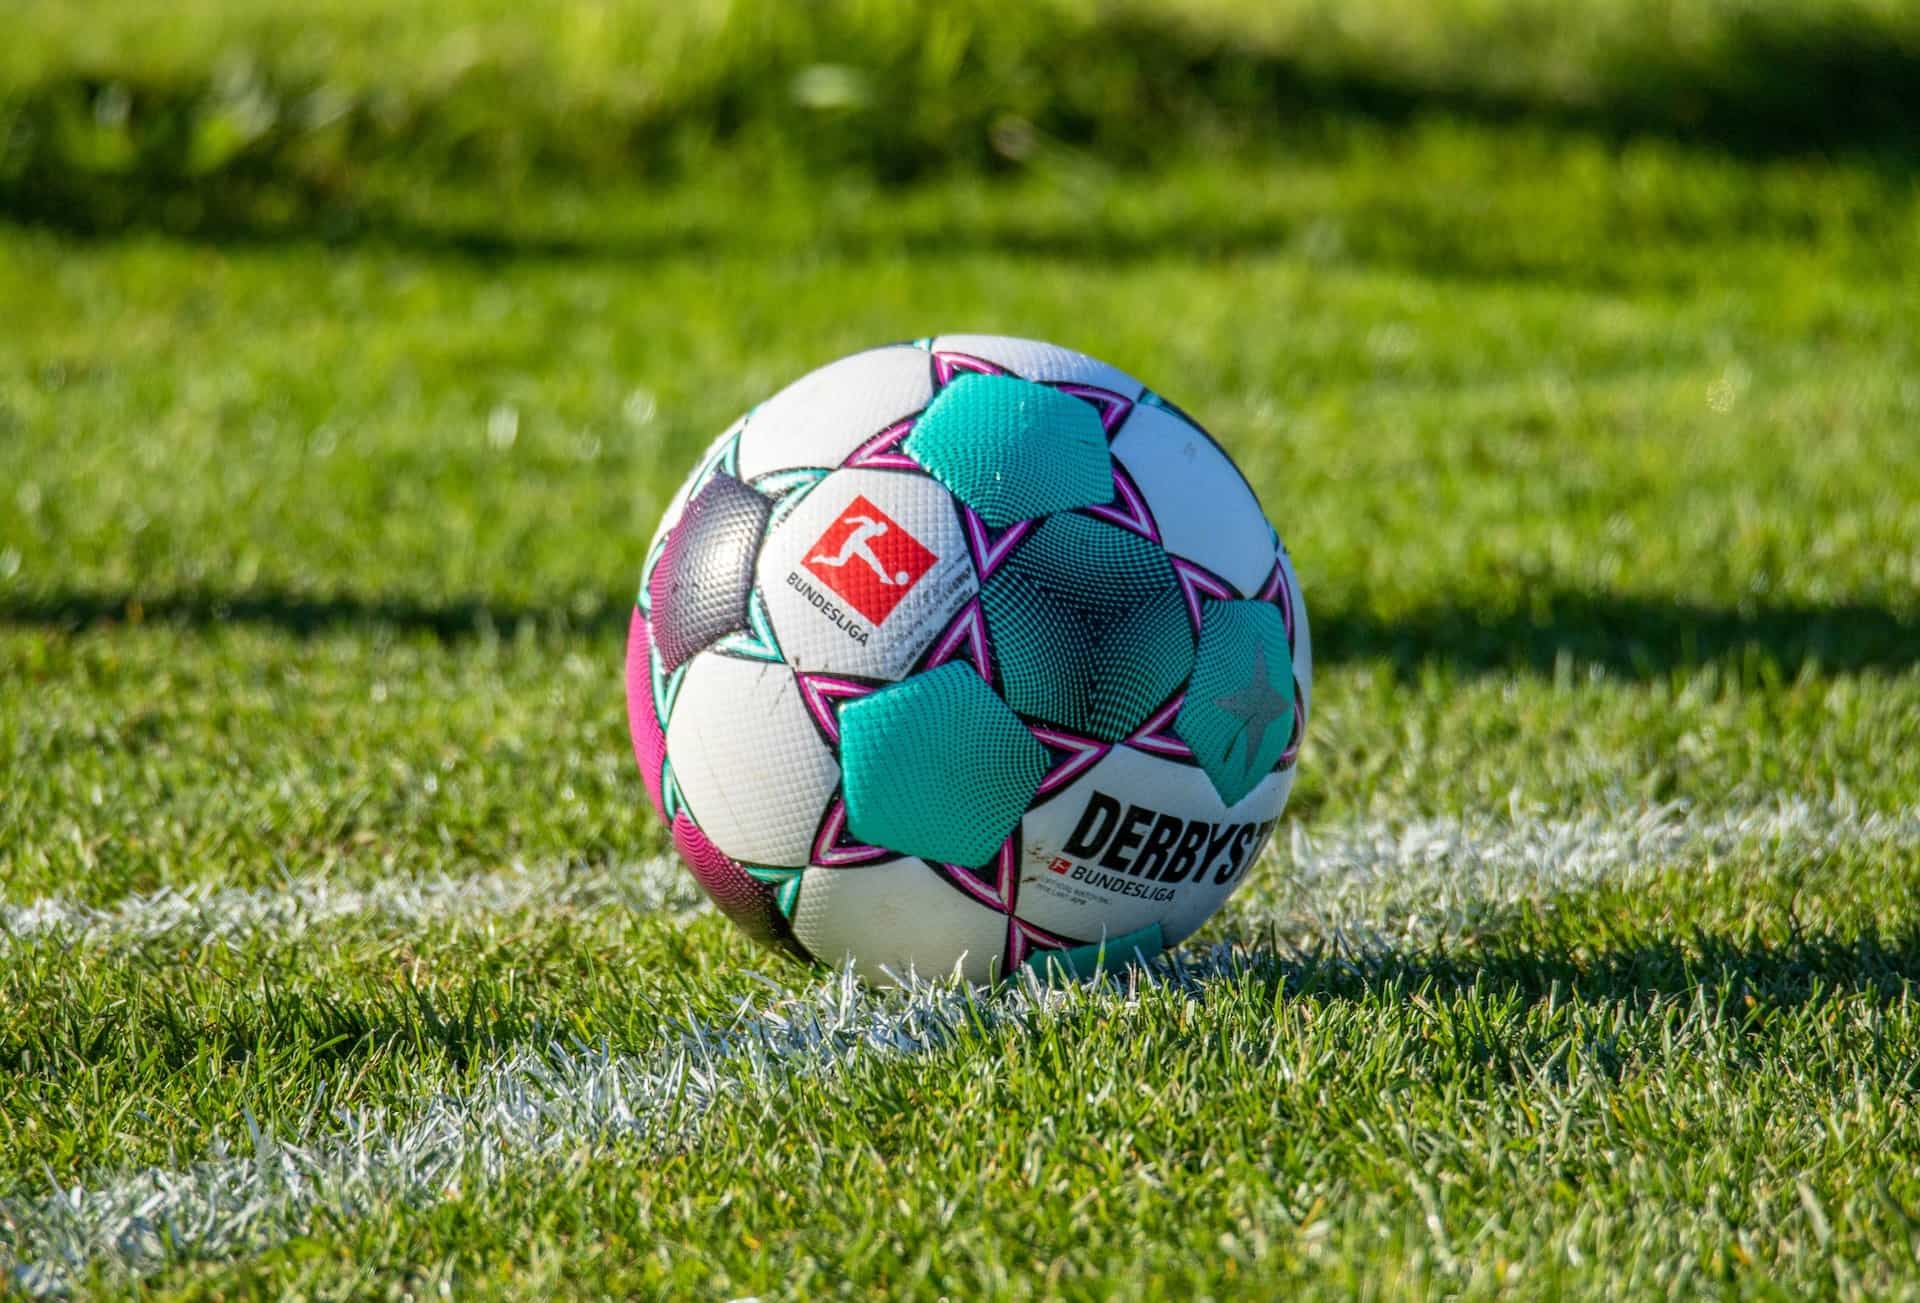 Der offizielle Spielball der Bundesliga liegt auf dem Rasen